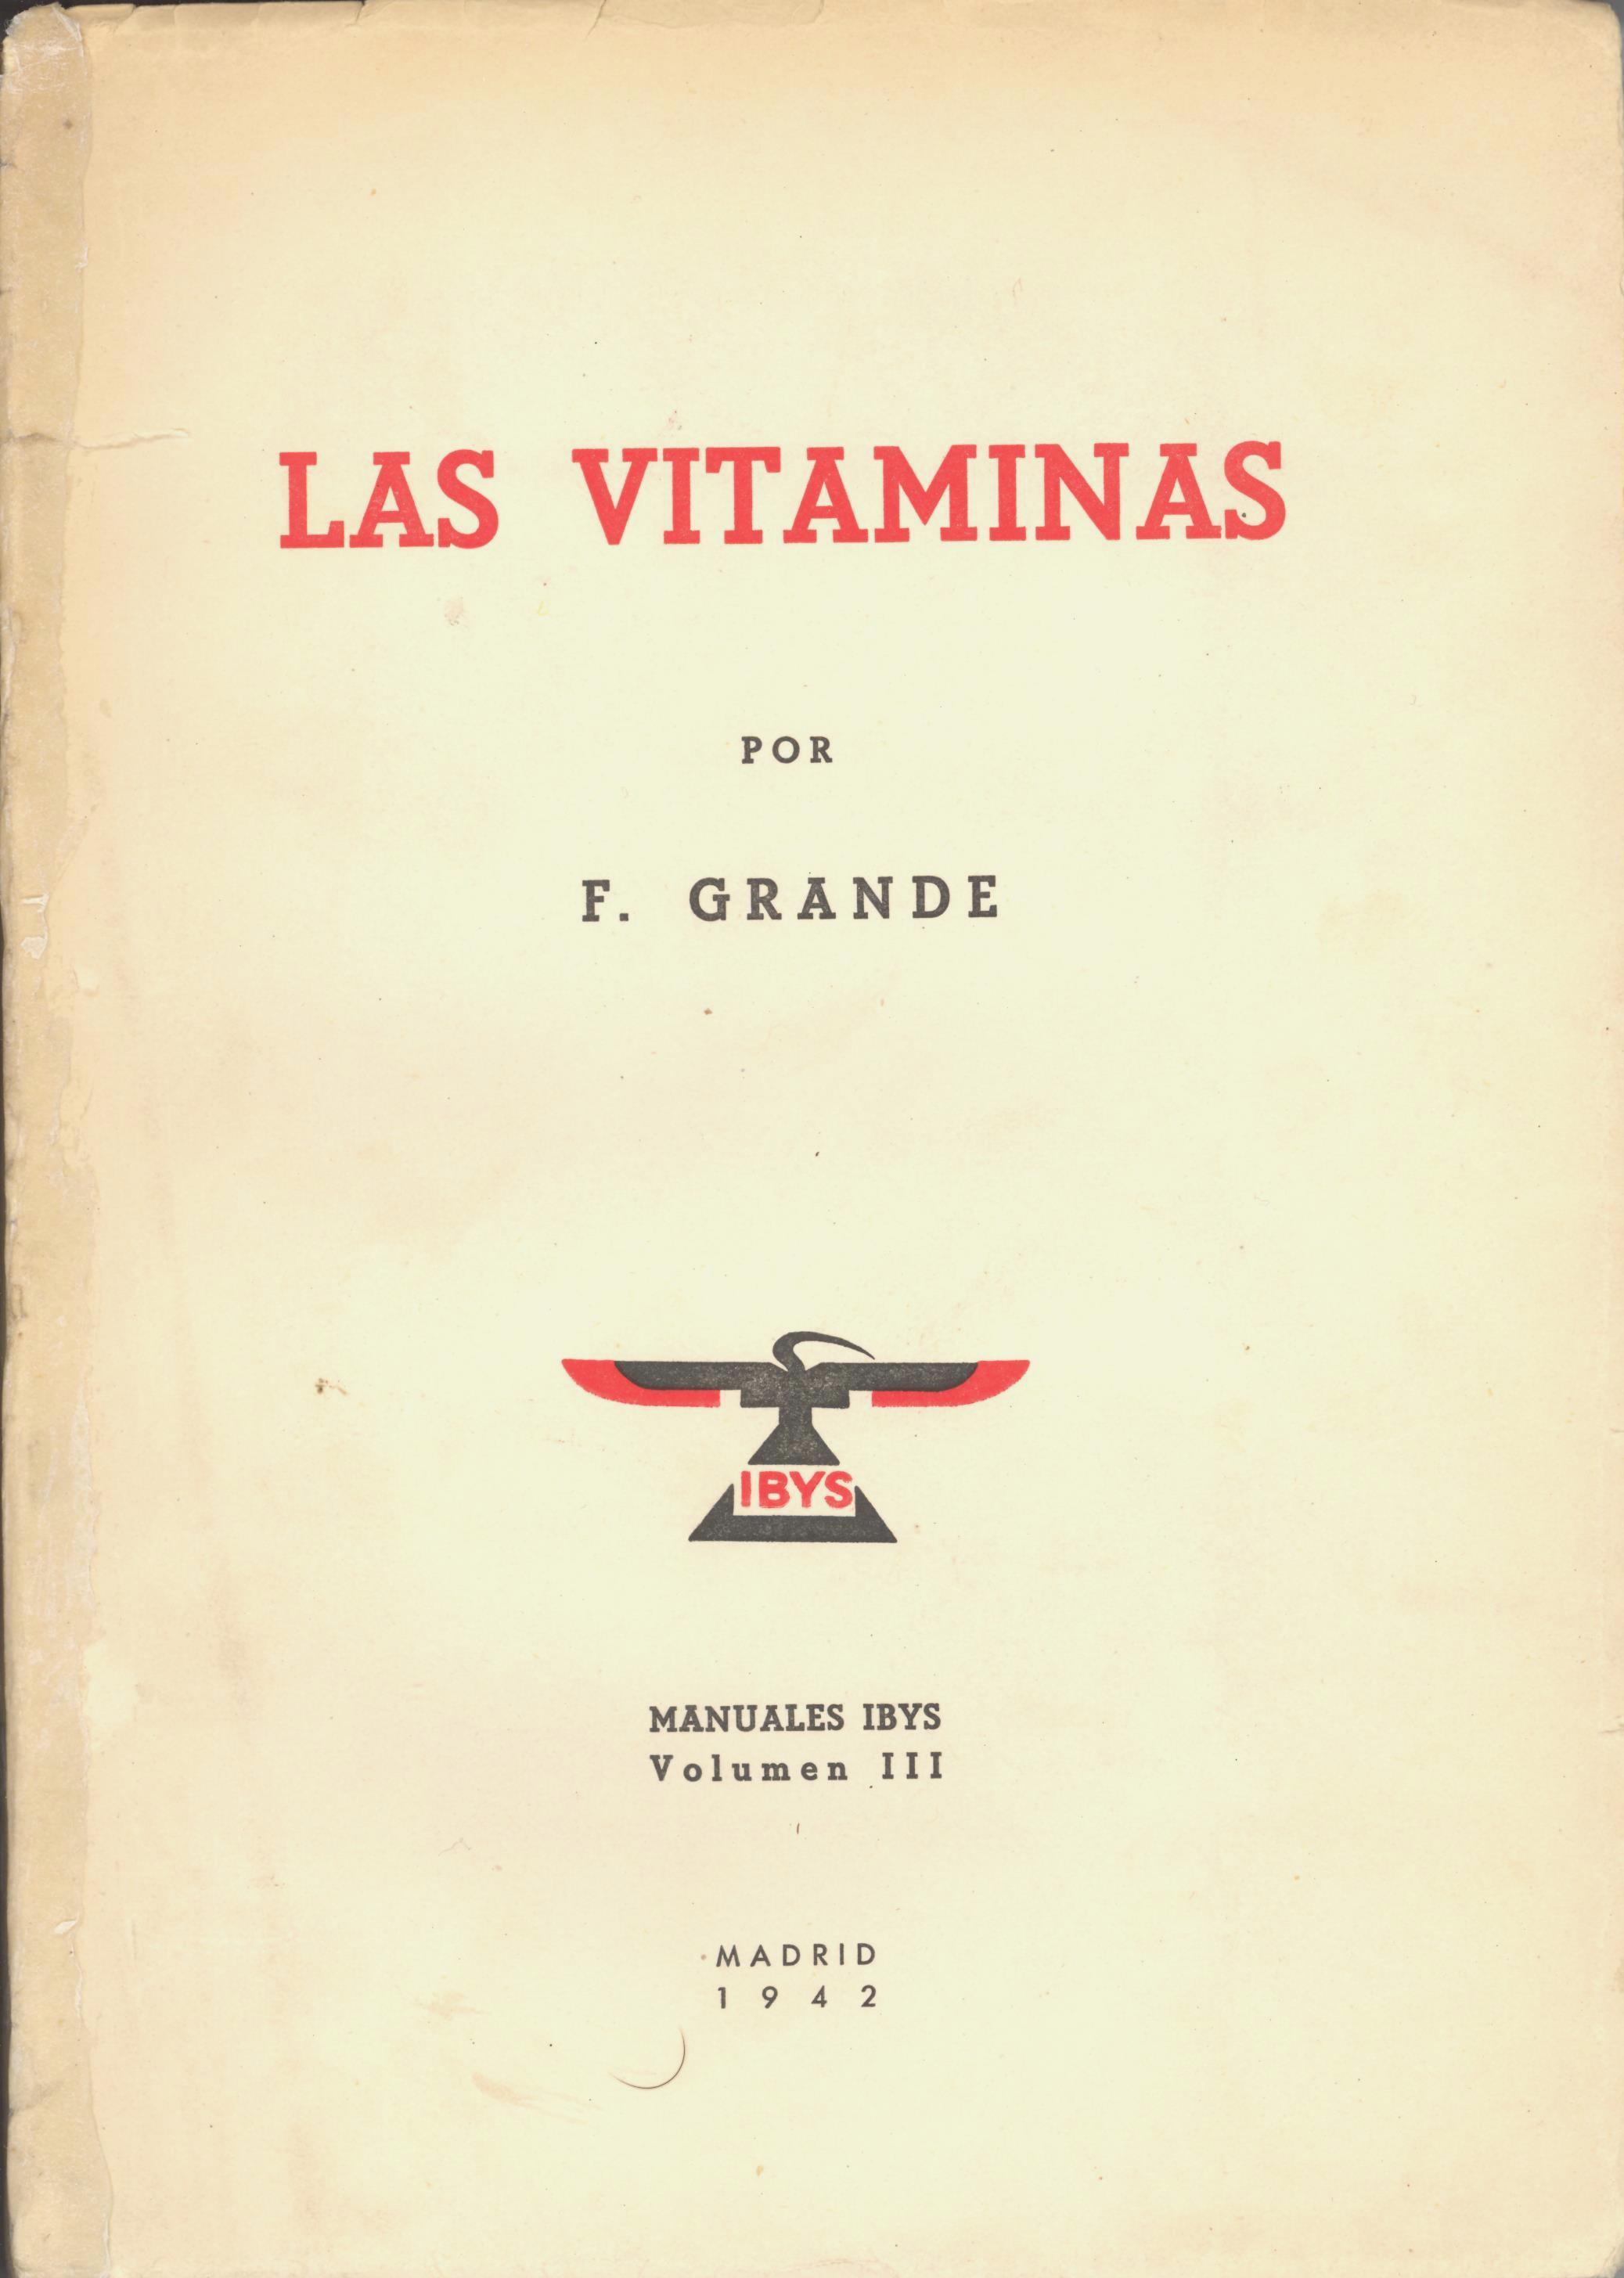 Francisco Grande Covián, 1942